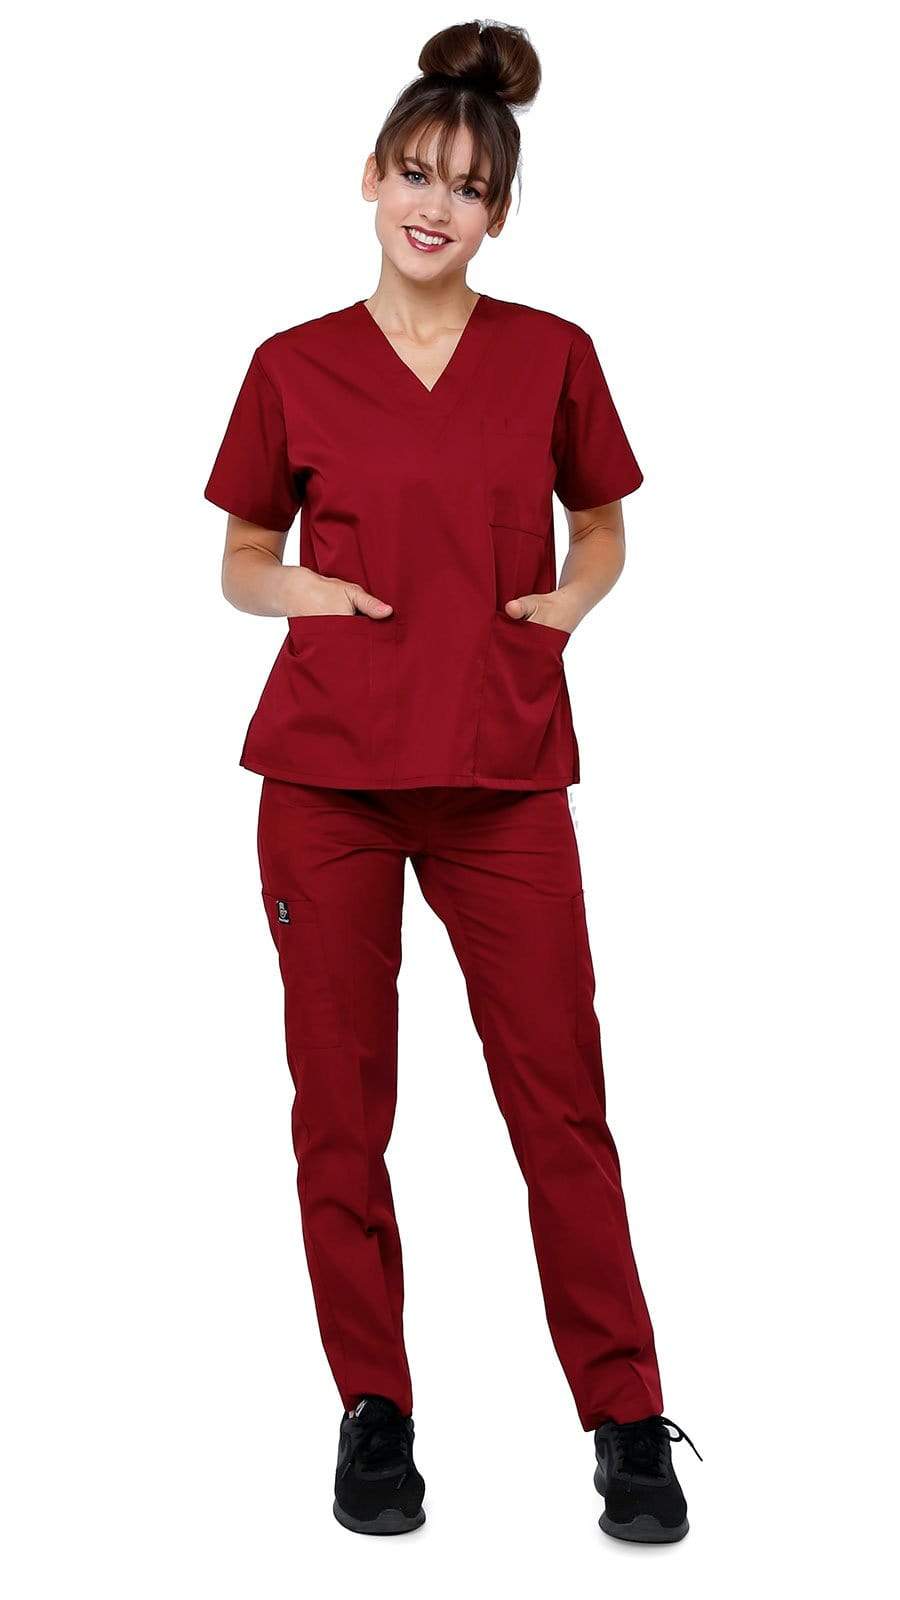 Dress A Med Women's Classic 8 Pocket Uniform Scrubs